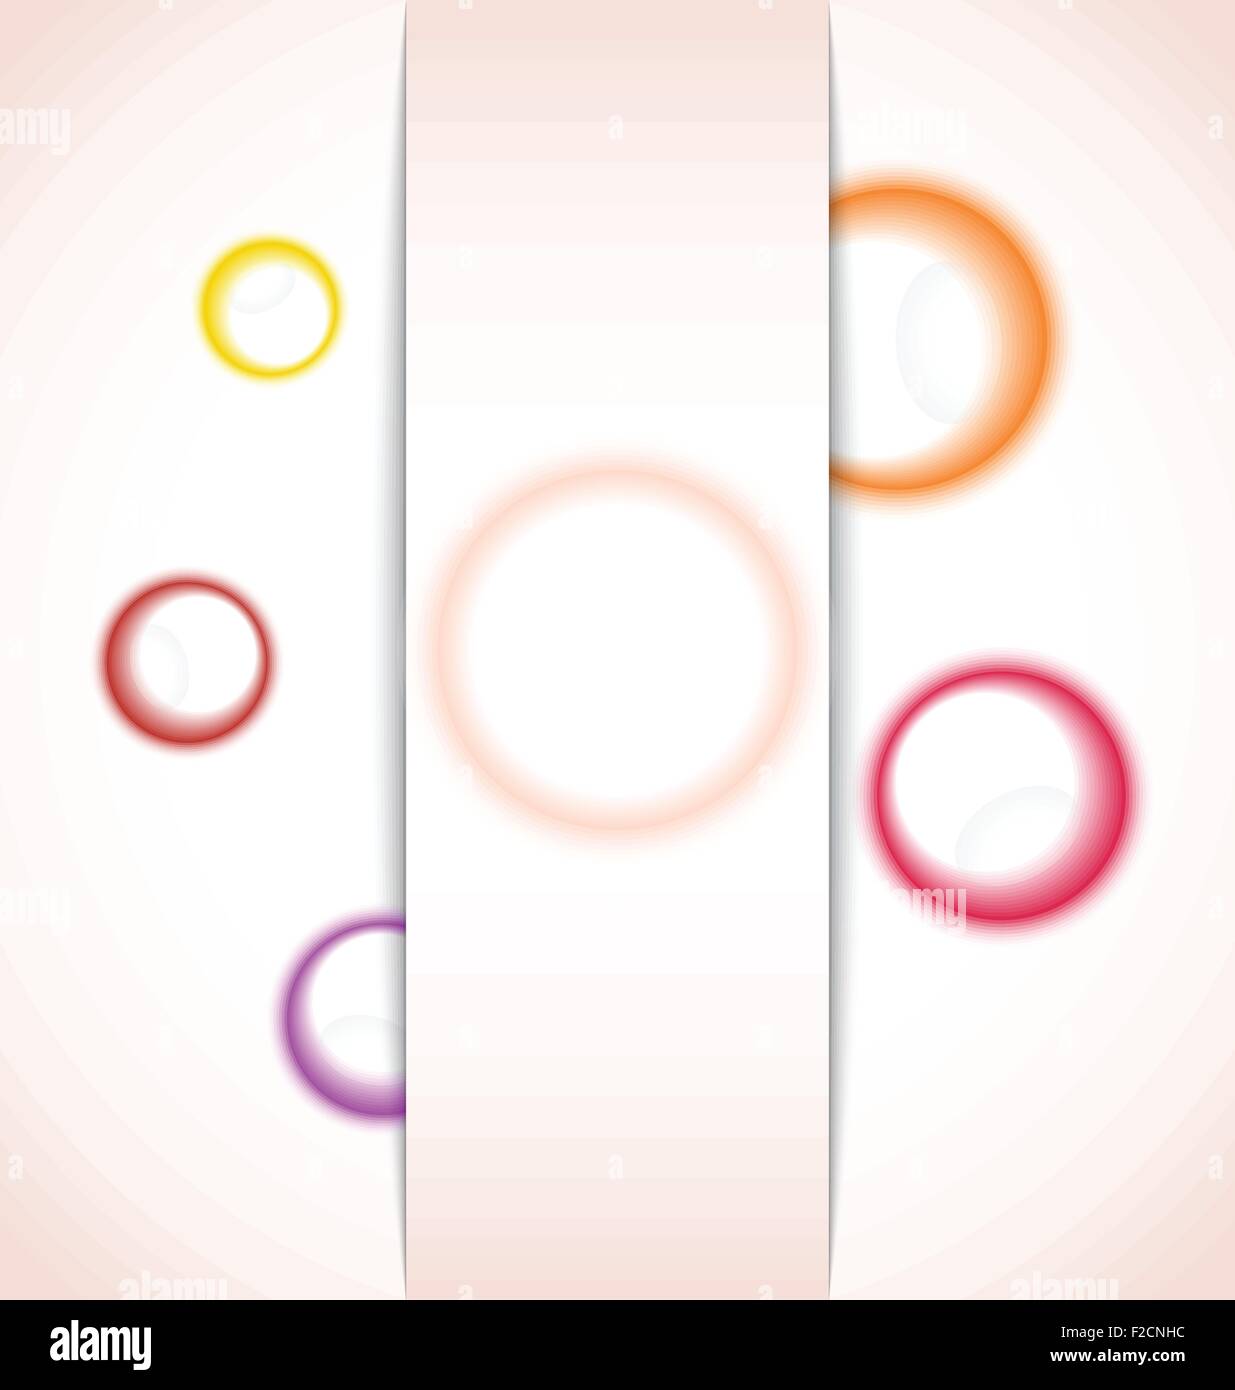 Zusammenfassung Hintergrund mit multicolor-Blase Stock Vektor